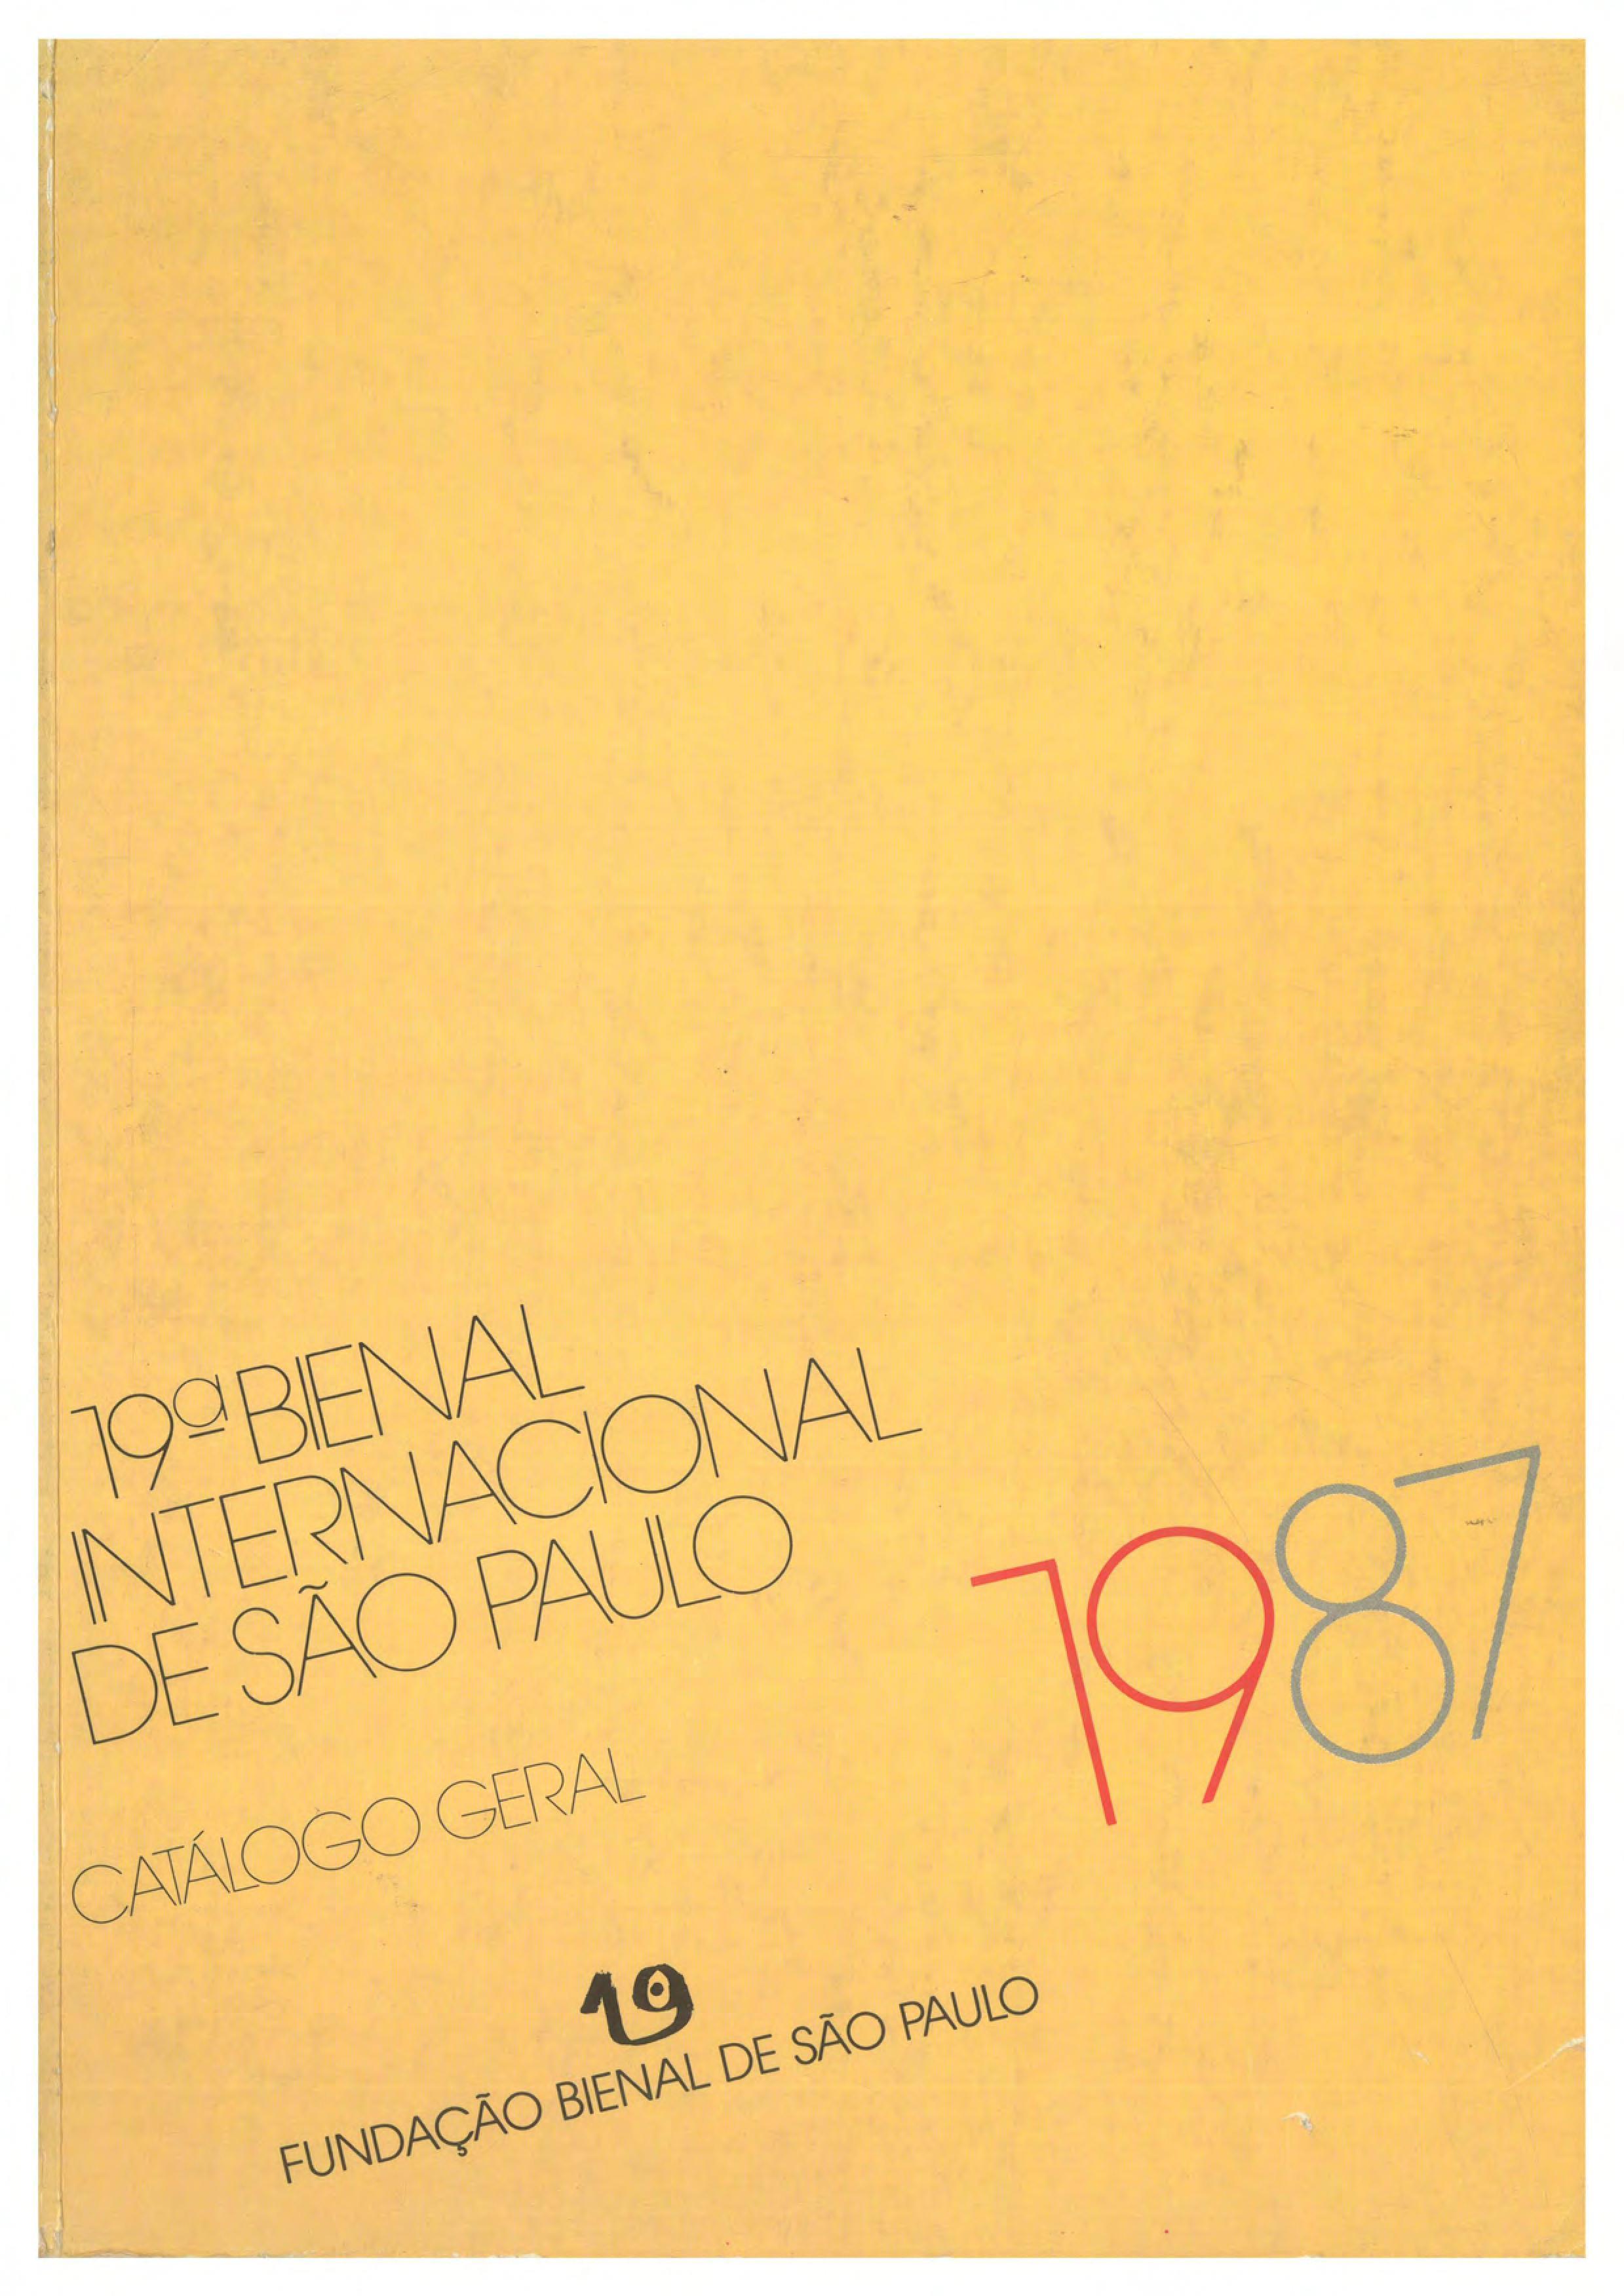 XIX Bienal Internacional de São Paulo. Representação Portuguesa. Catálogo Geral